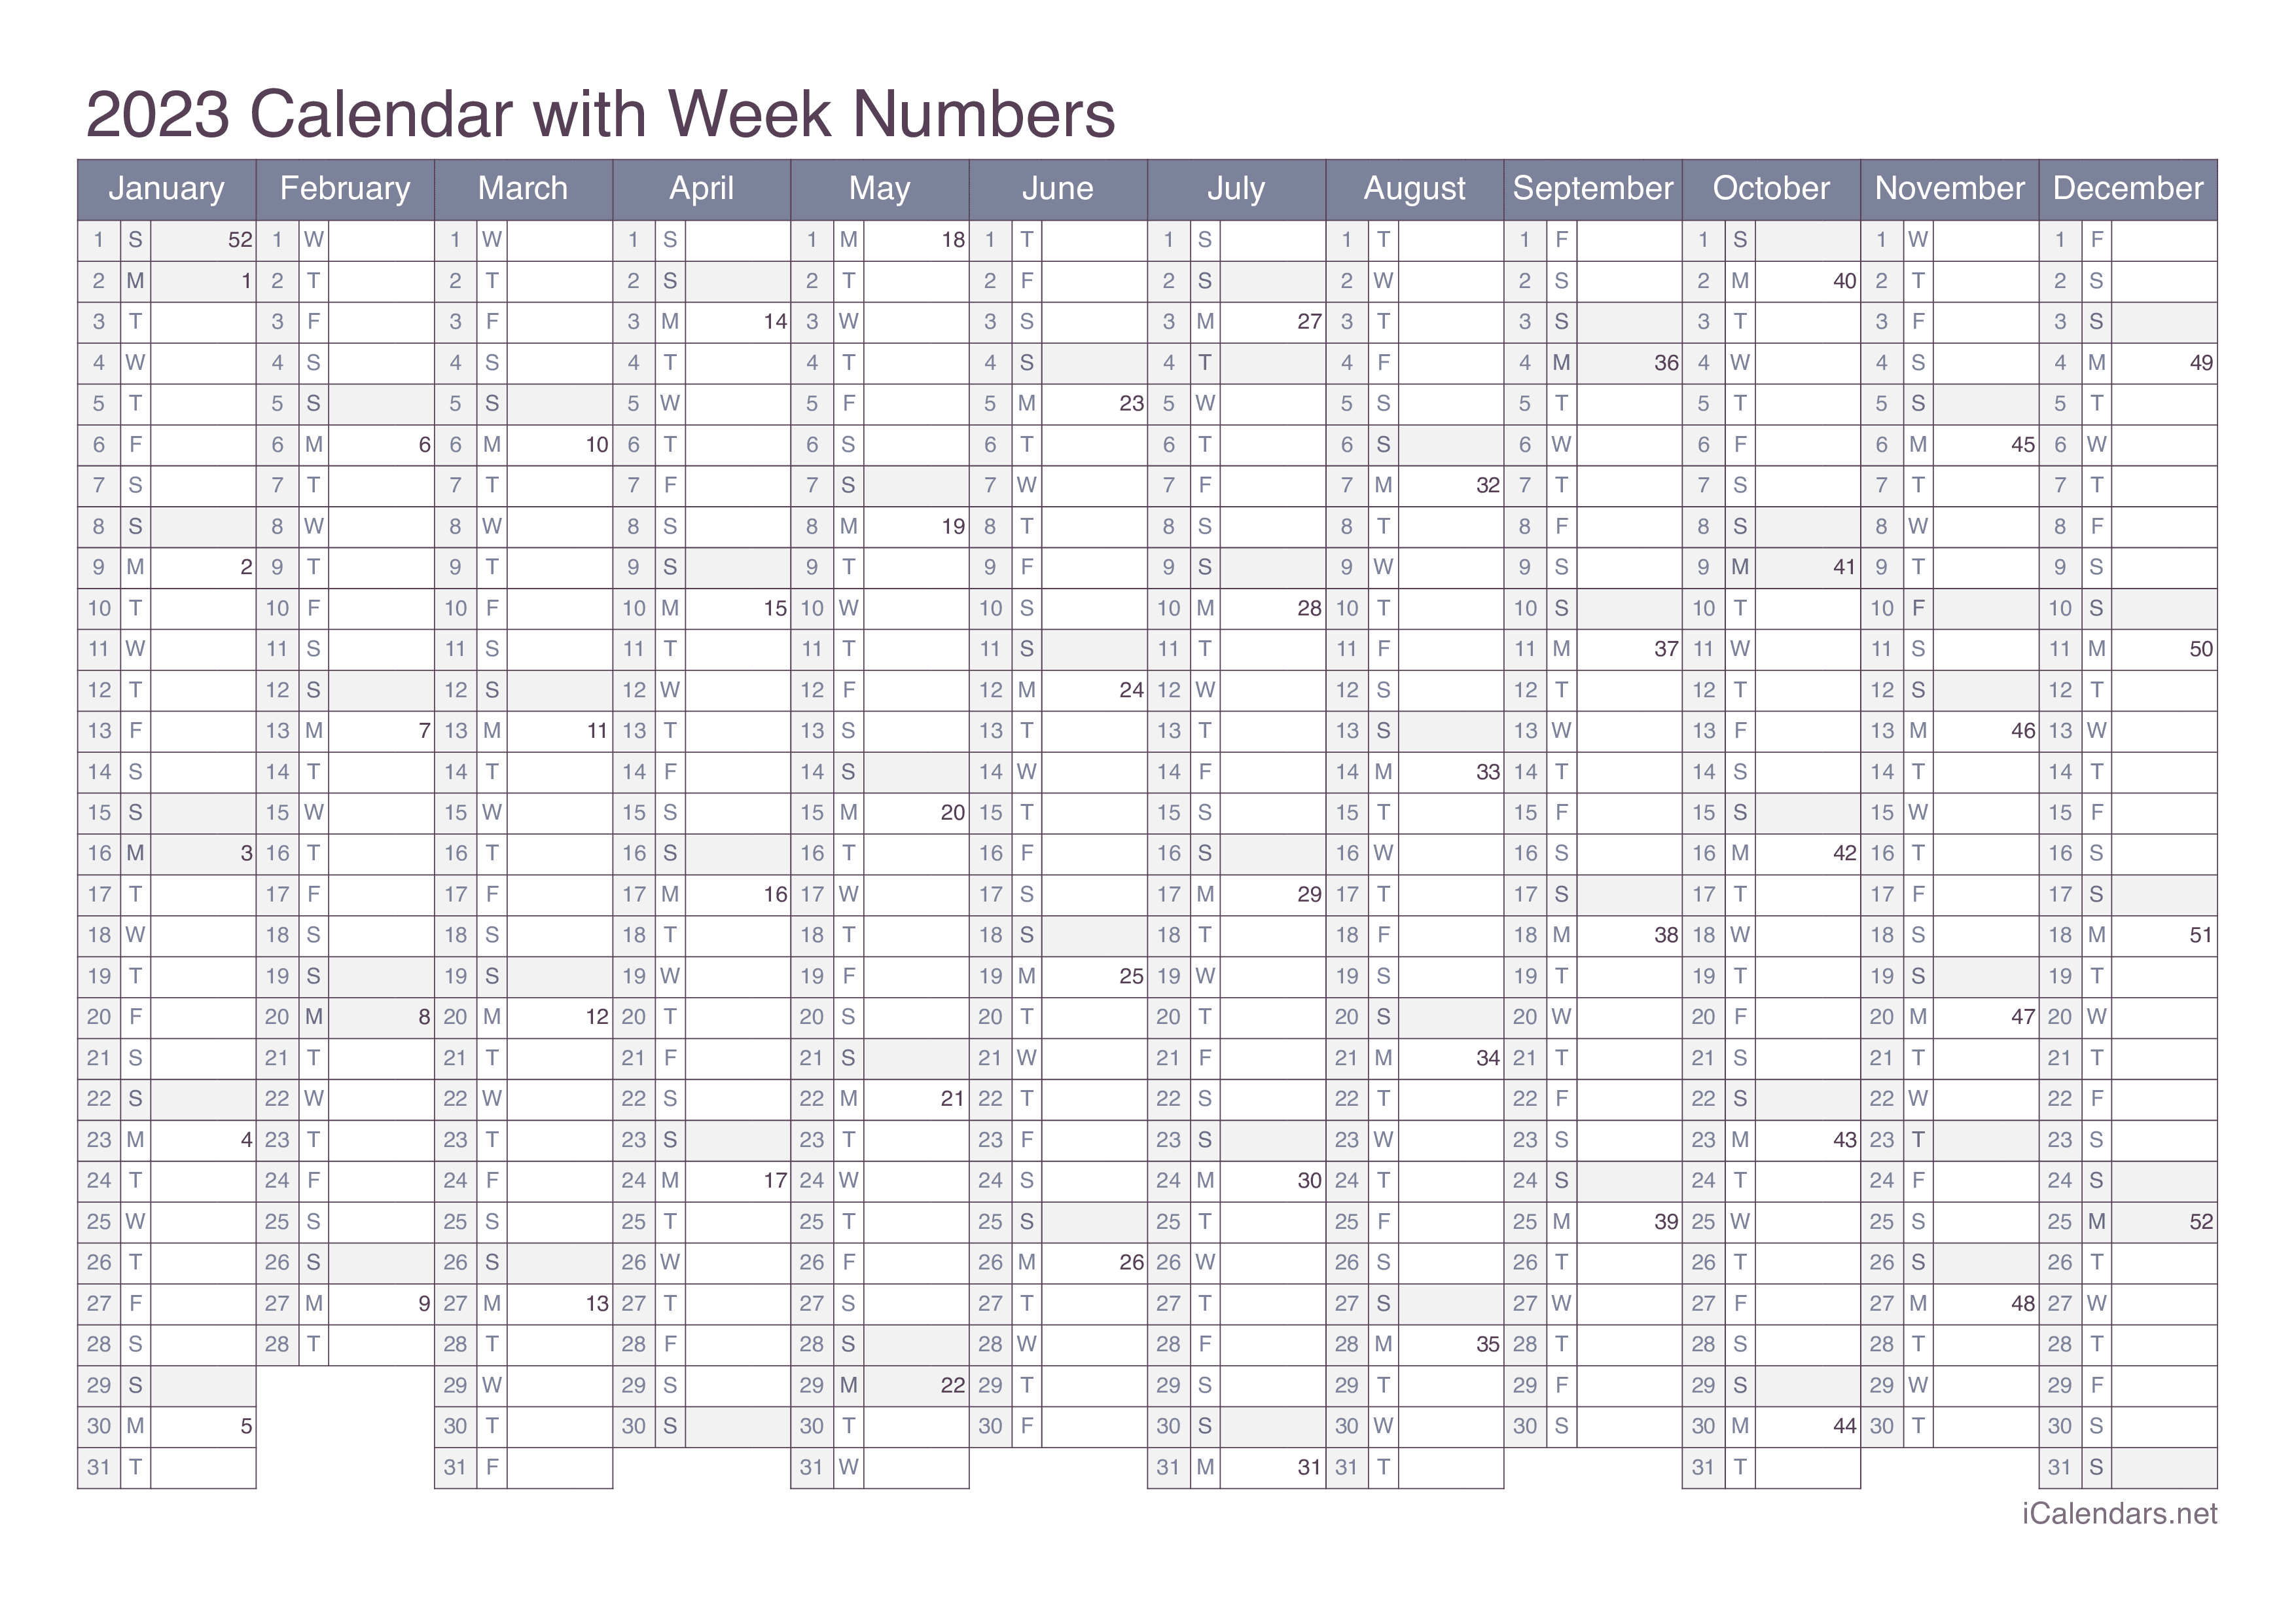 2023 Calendar with week numbers - Office